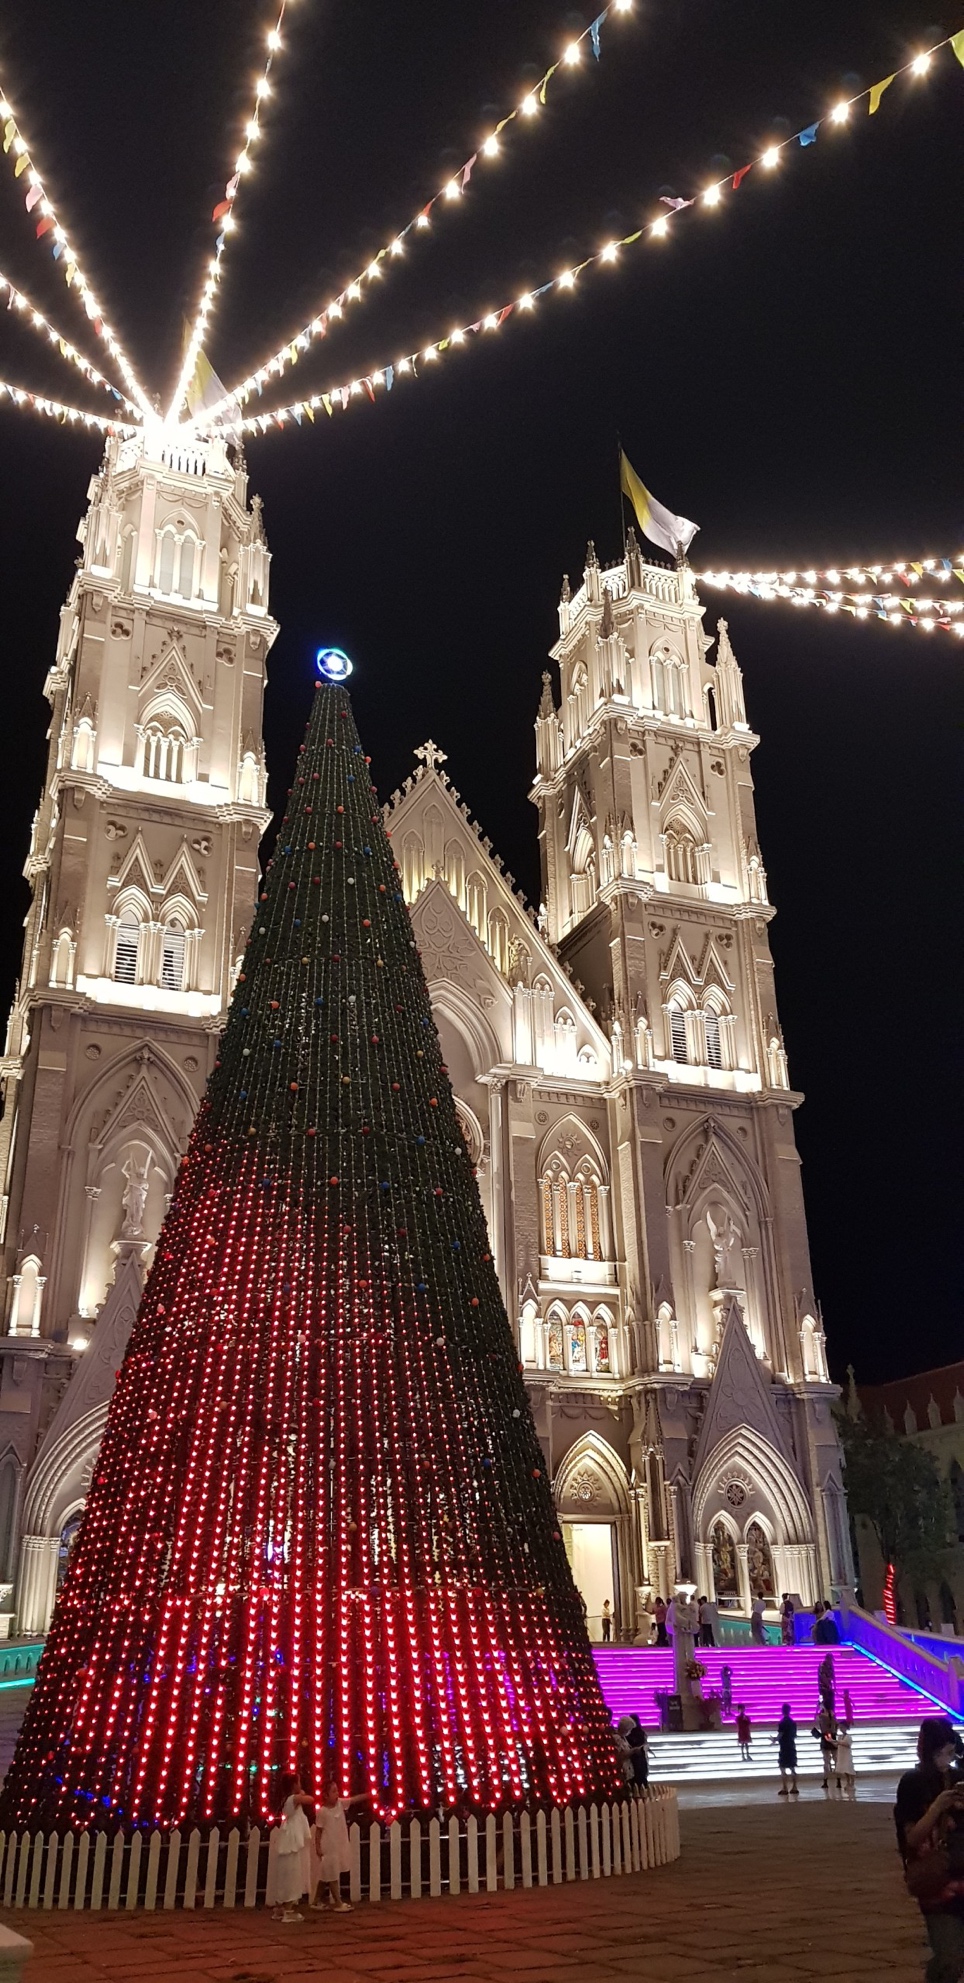 Nhà thờ kiến trúc Gothic tráng lệ ở Bà Rịa - Vũng Tàu mùa Giáng Sinh - Ảnh 2.